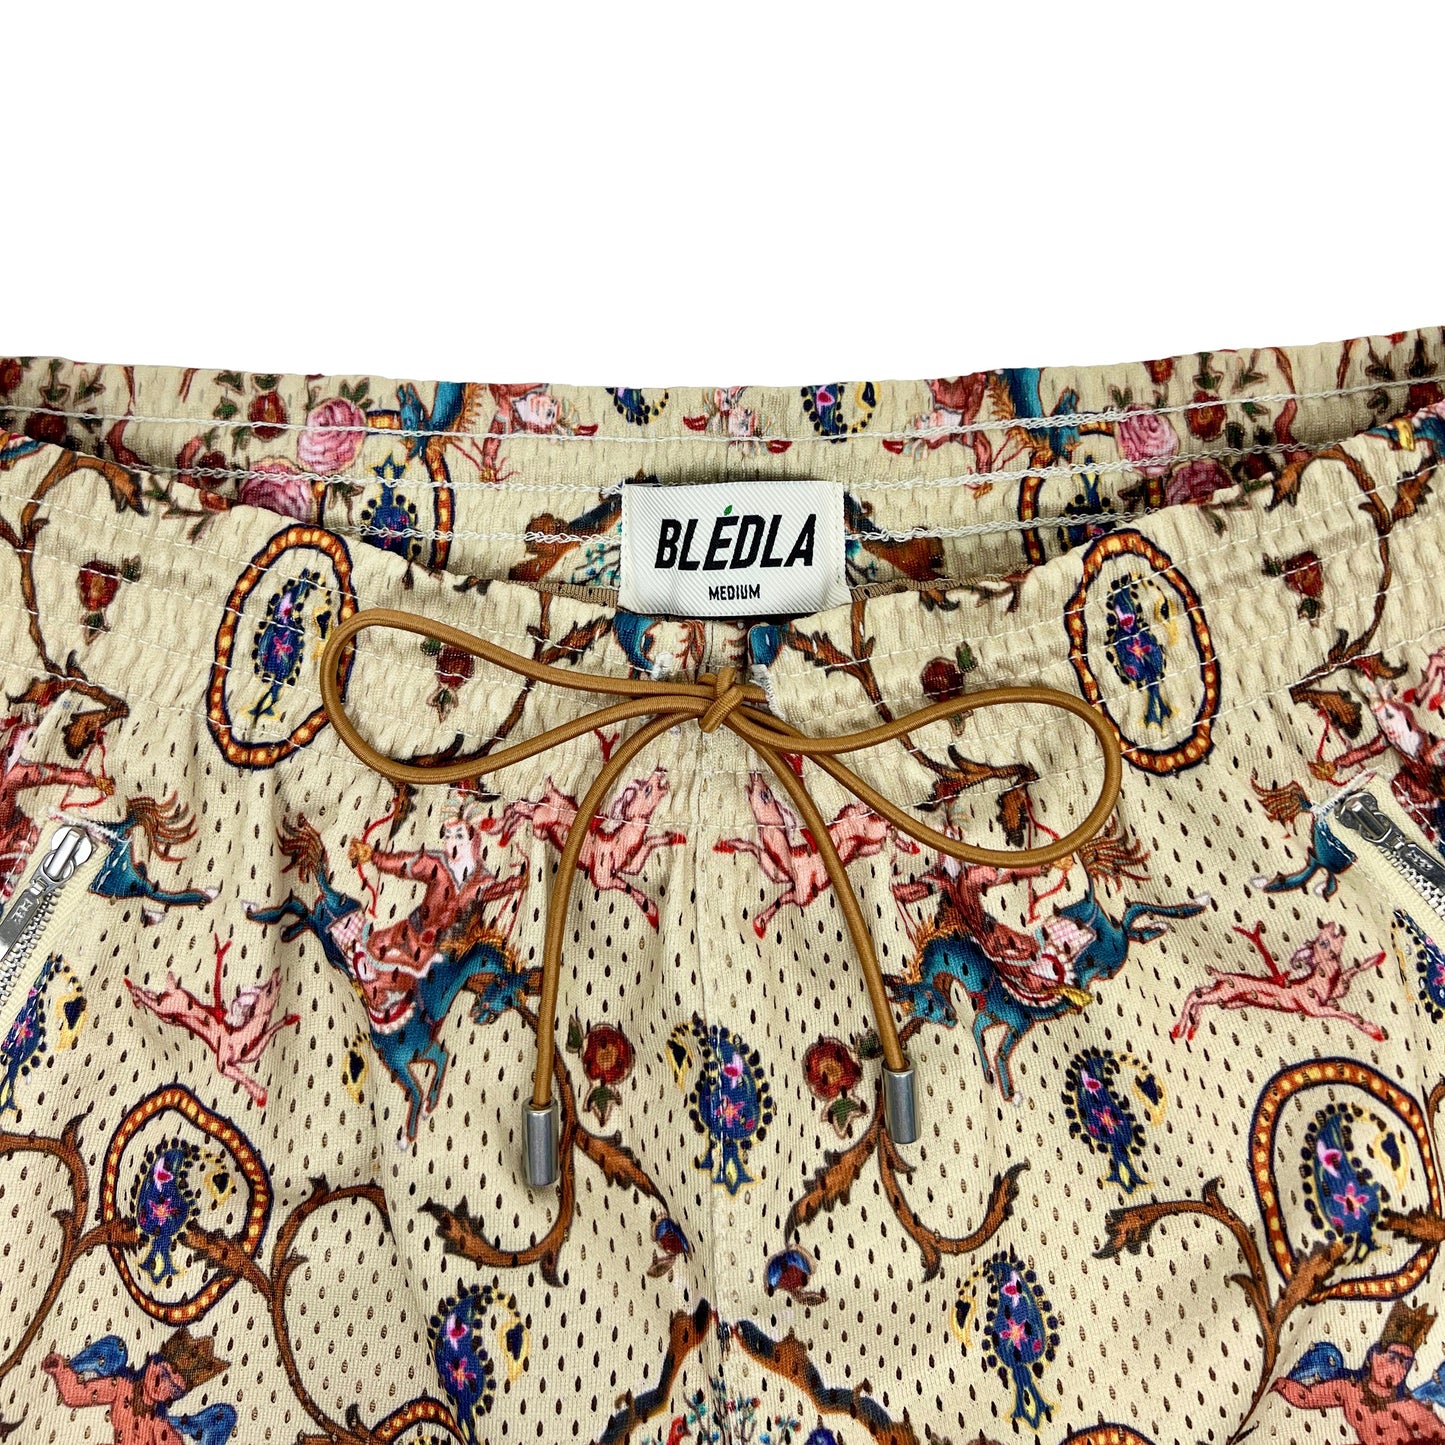 BLEDLA-BLED-Mesh Shorts-Basketball Shorts-Persian Shorts-Mosaic-Iran Short-Iran Clothing-Persian Rug Shorts-Streetwear-Luxury Shorts